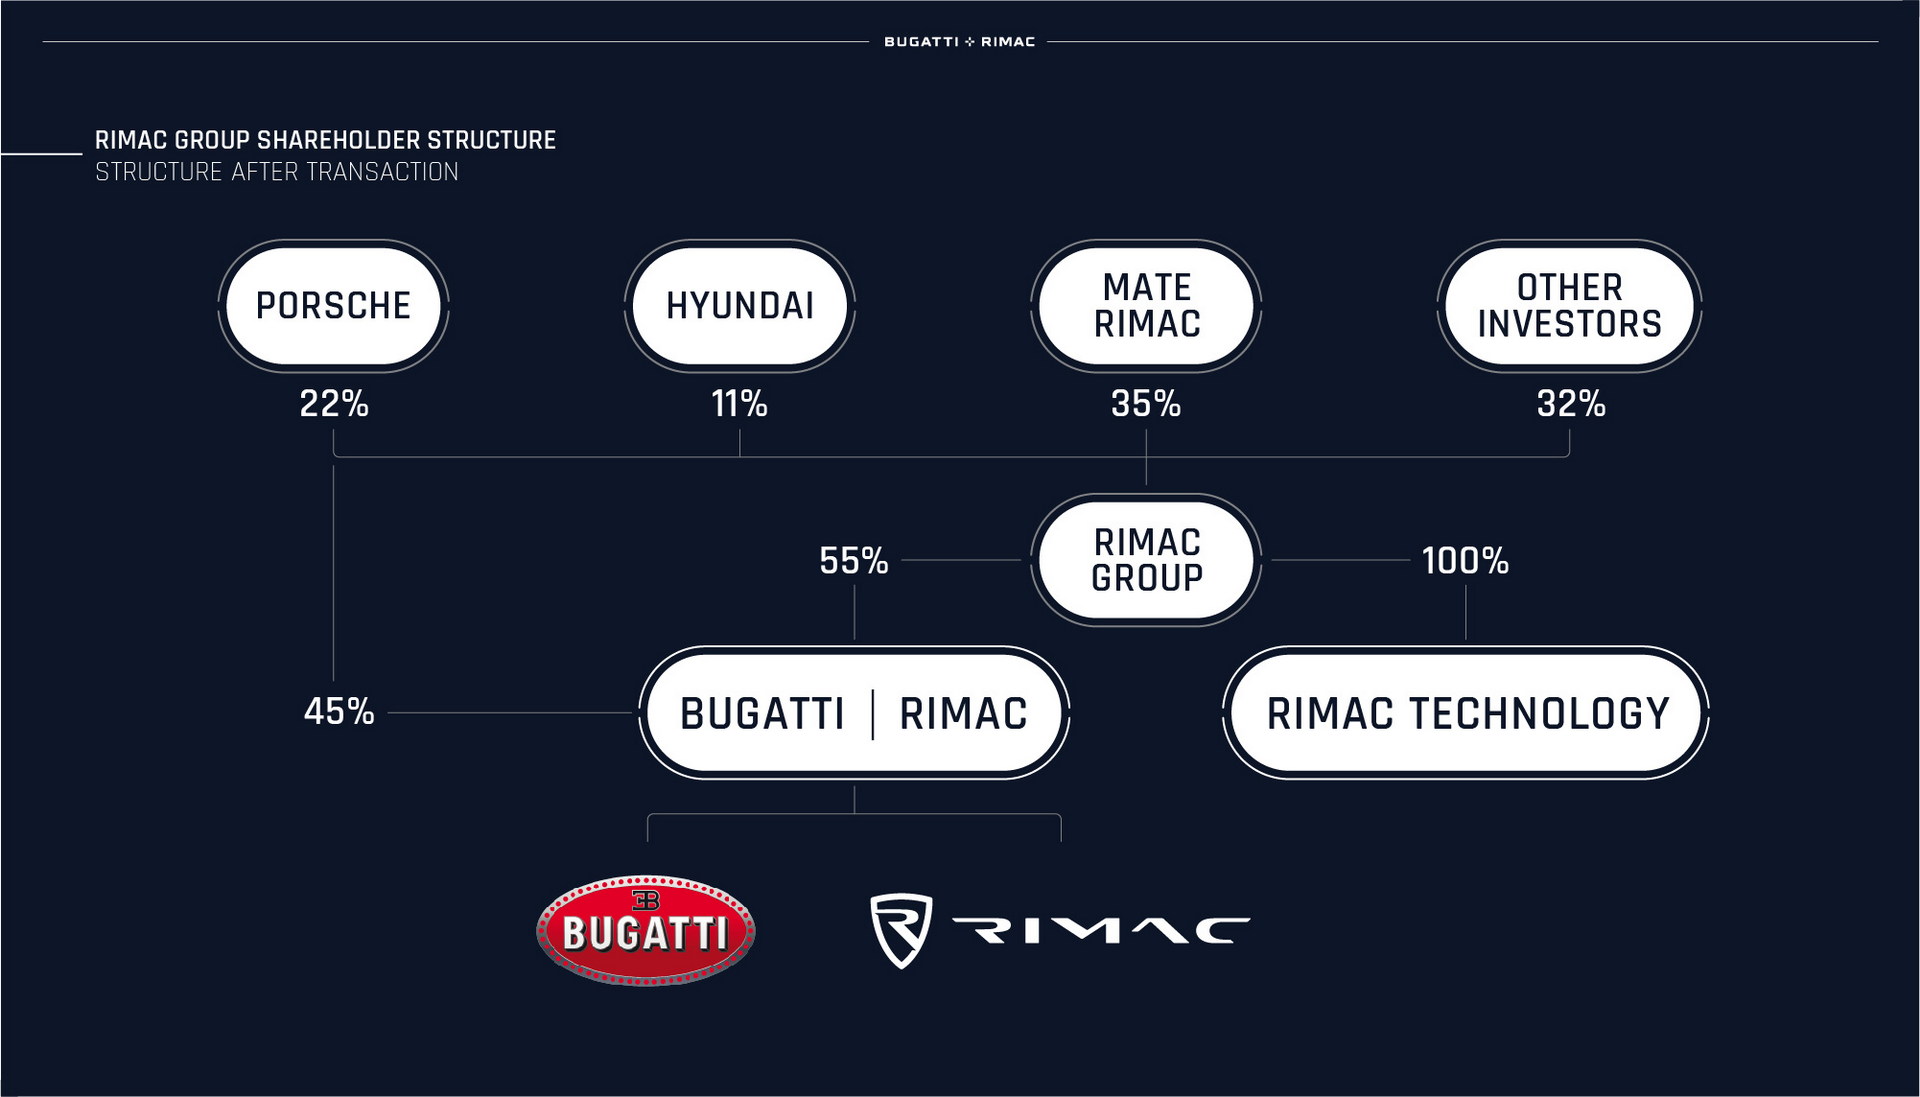 Bugatti Rimac chính thức thành hình: Thế lực lớn nhất của làng siêu xe thế giới? - Ảnh 2.